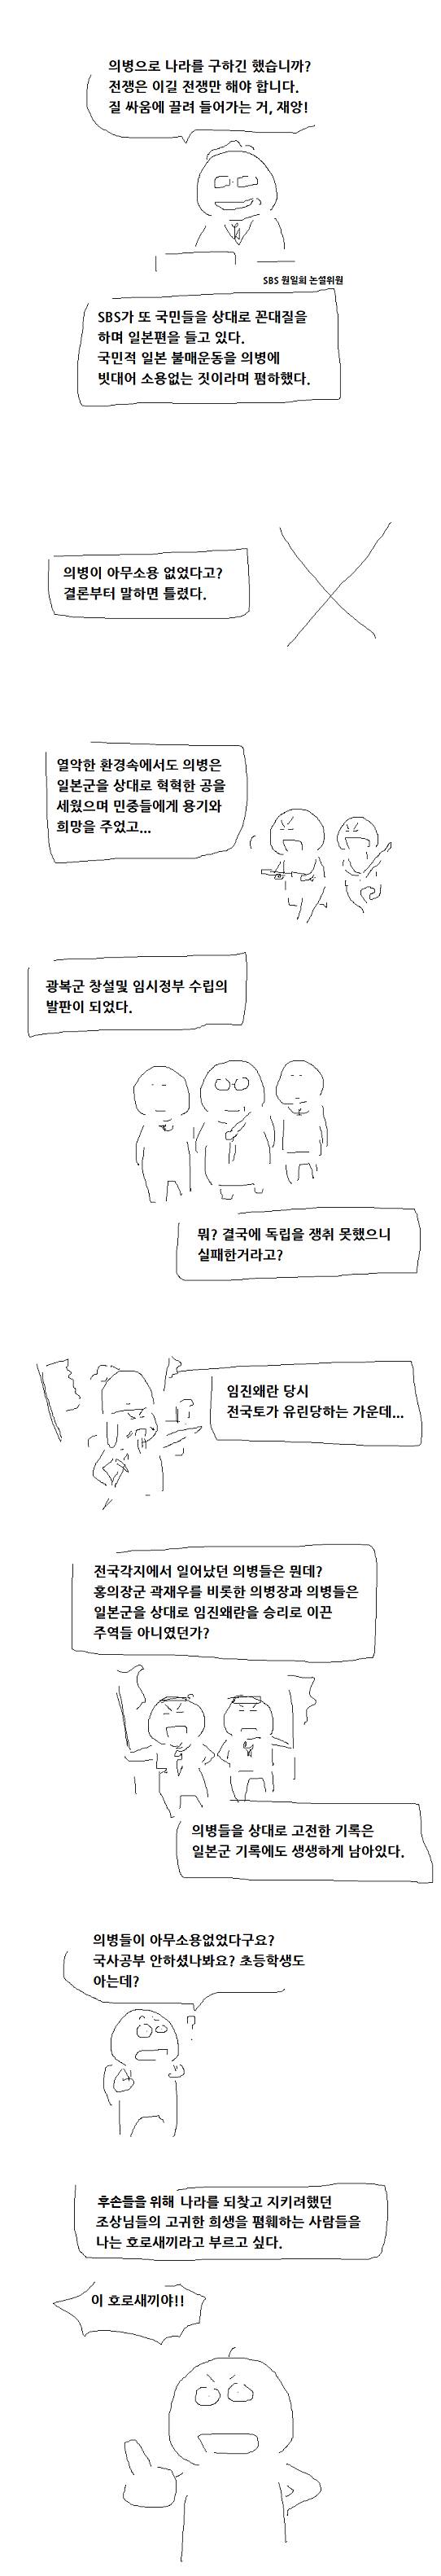 SBS원일희 '의병폄훼발언' 반박하는 만화 | 인스티즈